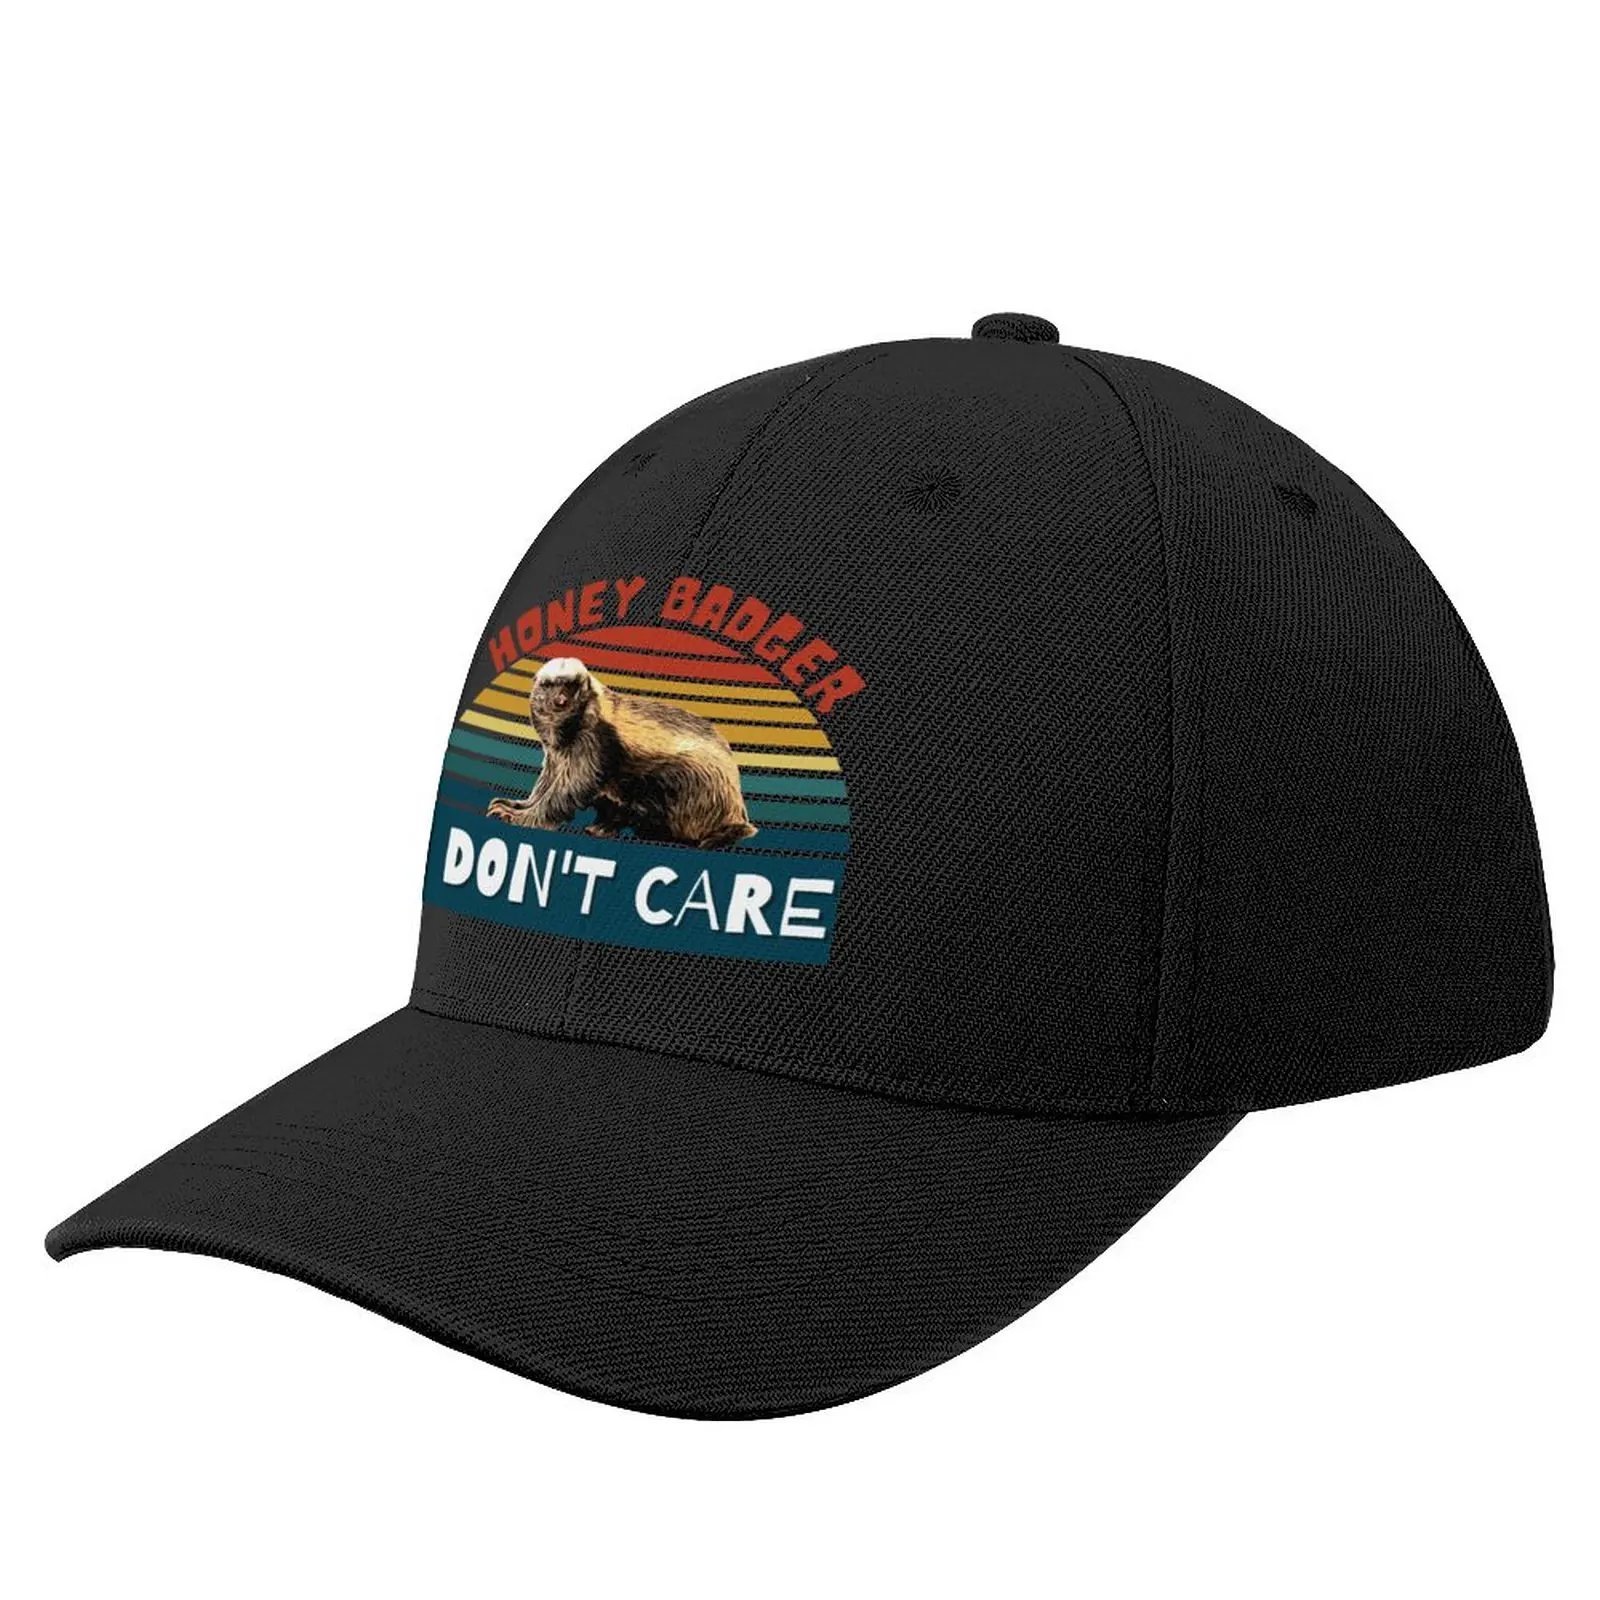 

I don't care, honey badger Baseball Cap Snap Back Hat sun hat Male Mens Caps Women'S